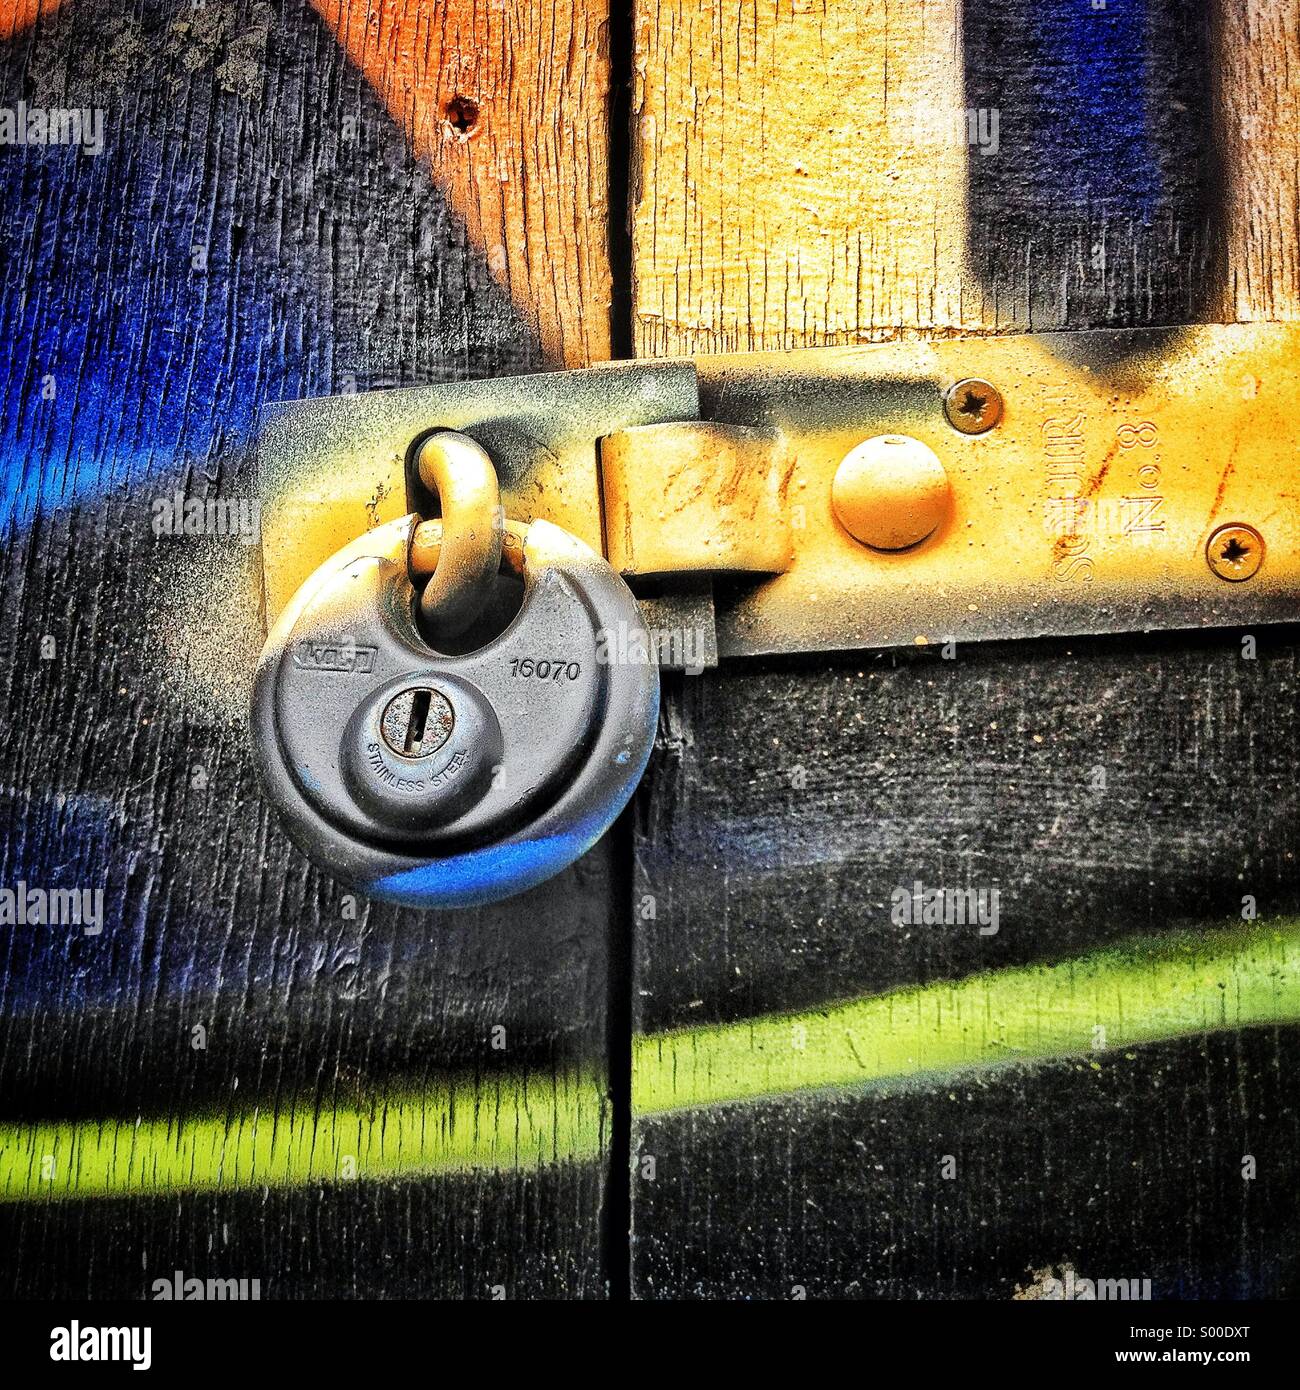 Graffiti over lock on door Stock Photo